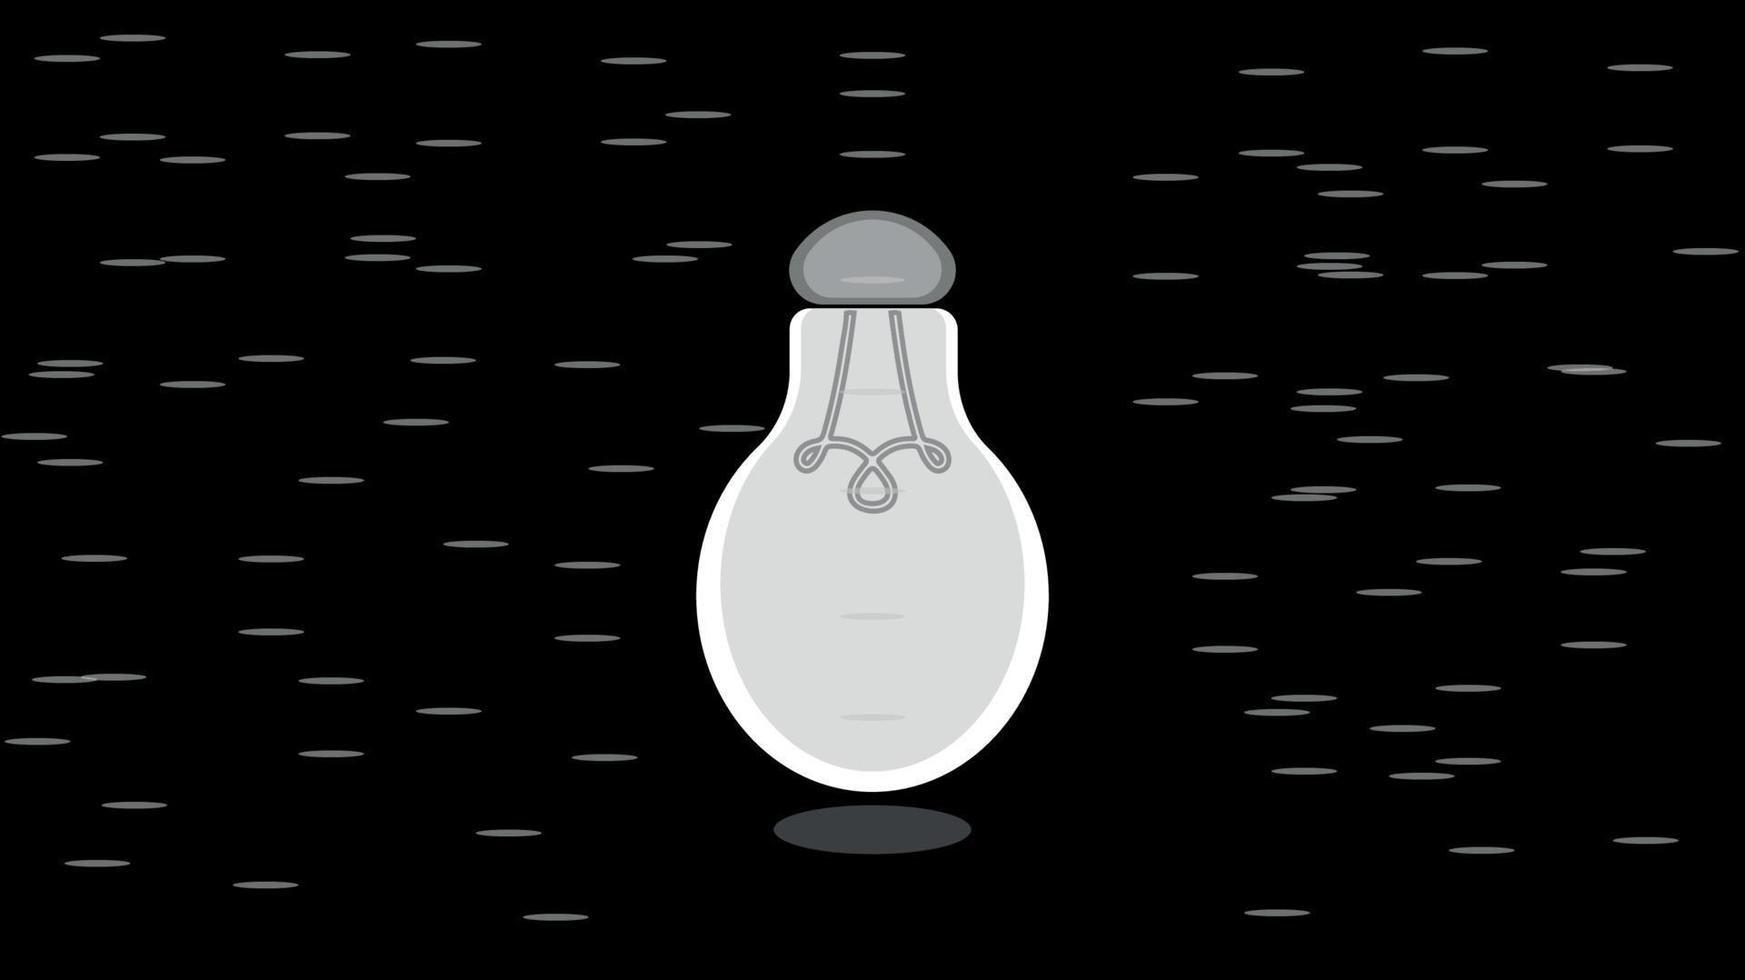 ampoules vectorielles réalistes à économie d'énergie sur ampoule fluorescente et led à diode électroluminescente. conception de thèmes d'économie d'énergie et d'écologie vecteur